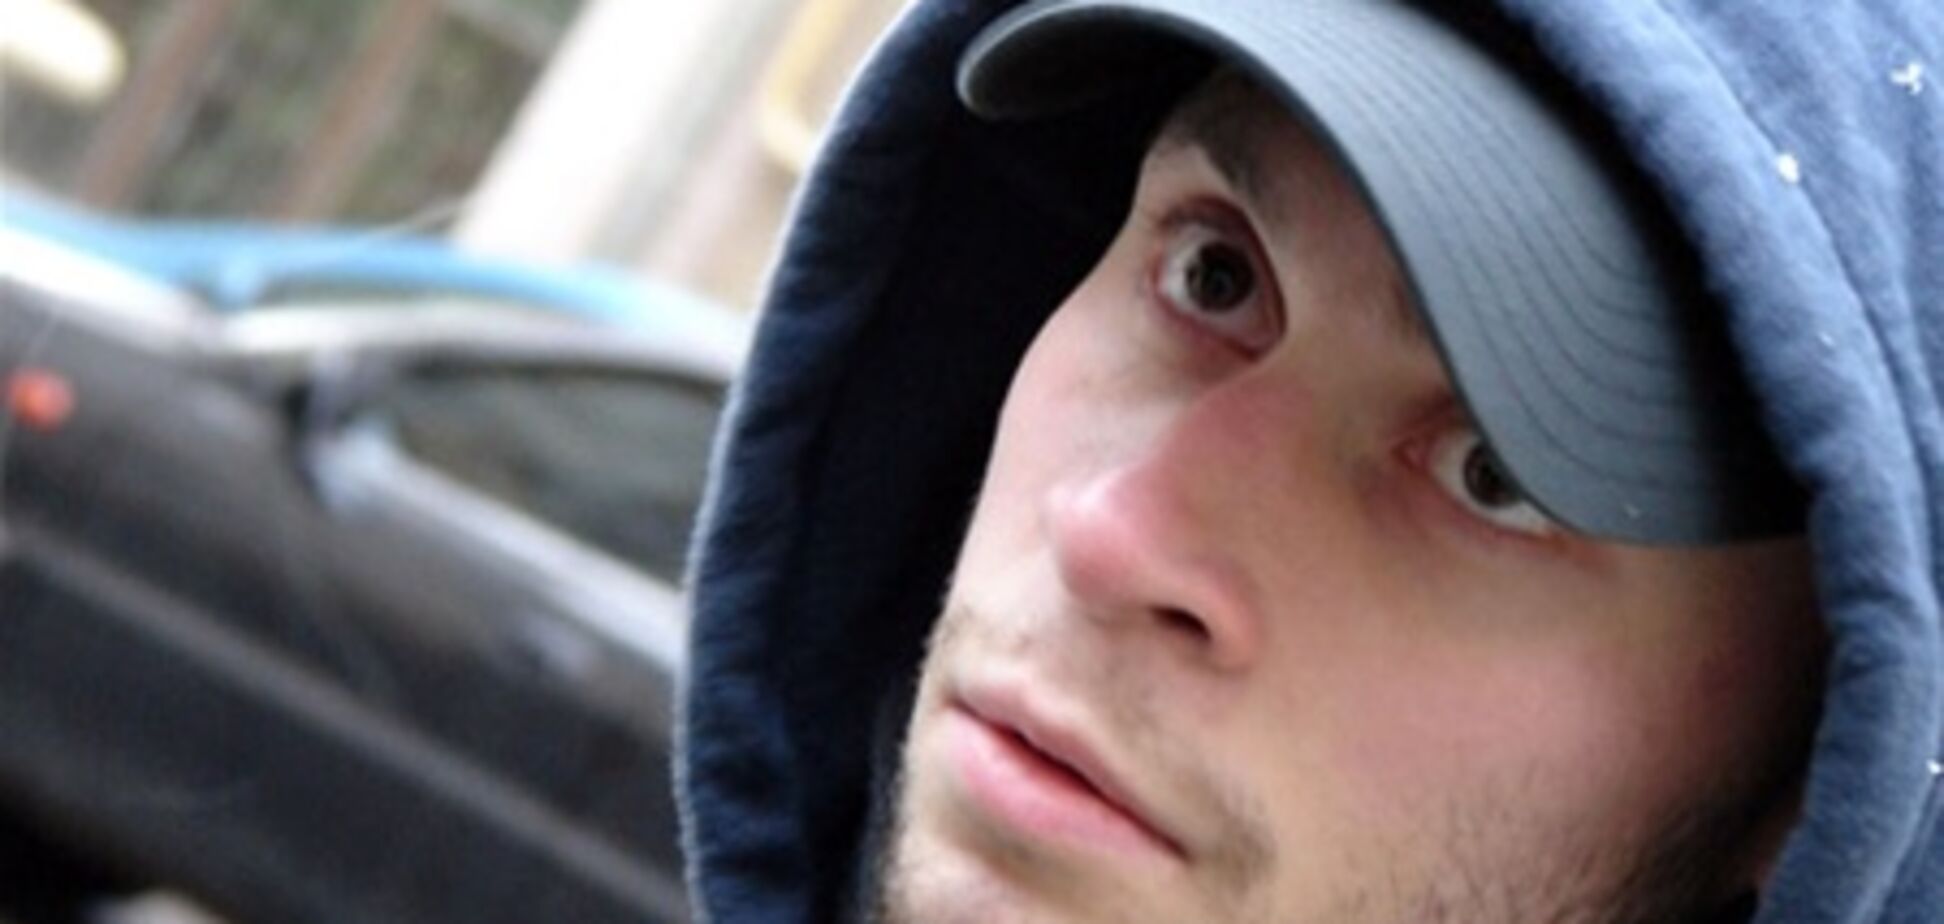 Подорвавшимся на гранате в Запорожье оказался 'террорист номер 1' из России